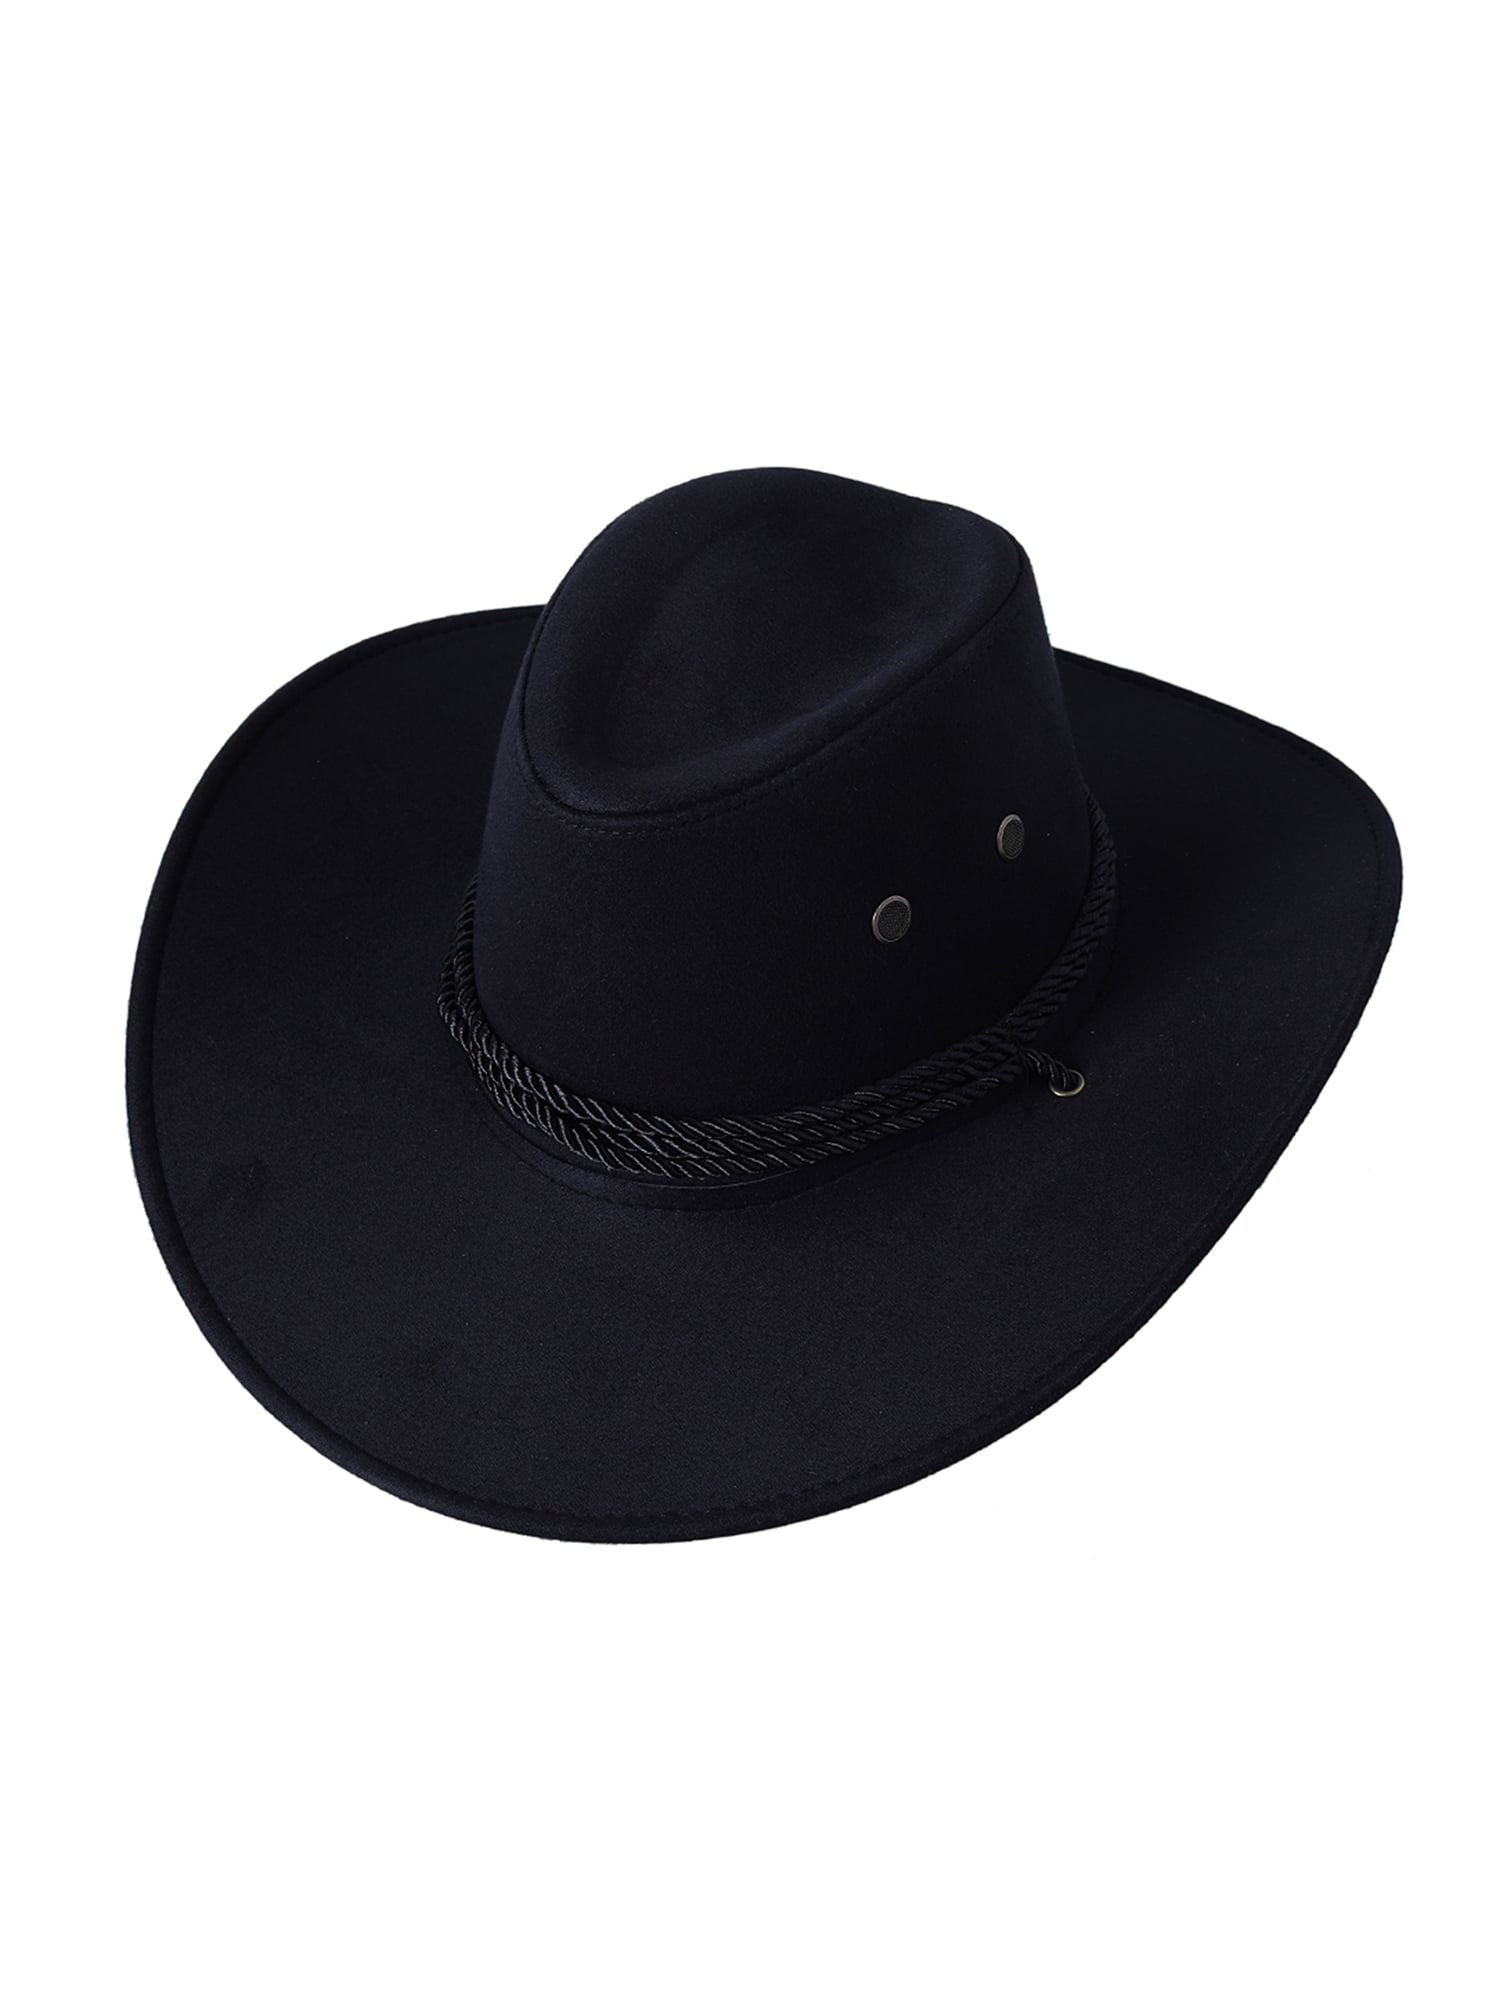 Unisex Horse Lover Cowboy Hats Adjustable Sun Caps 